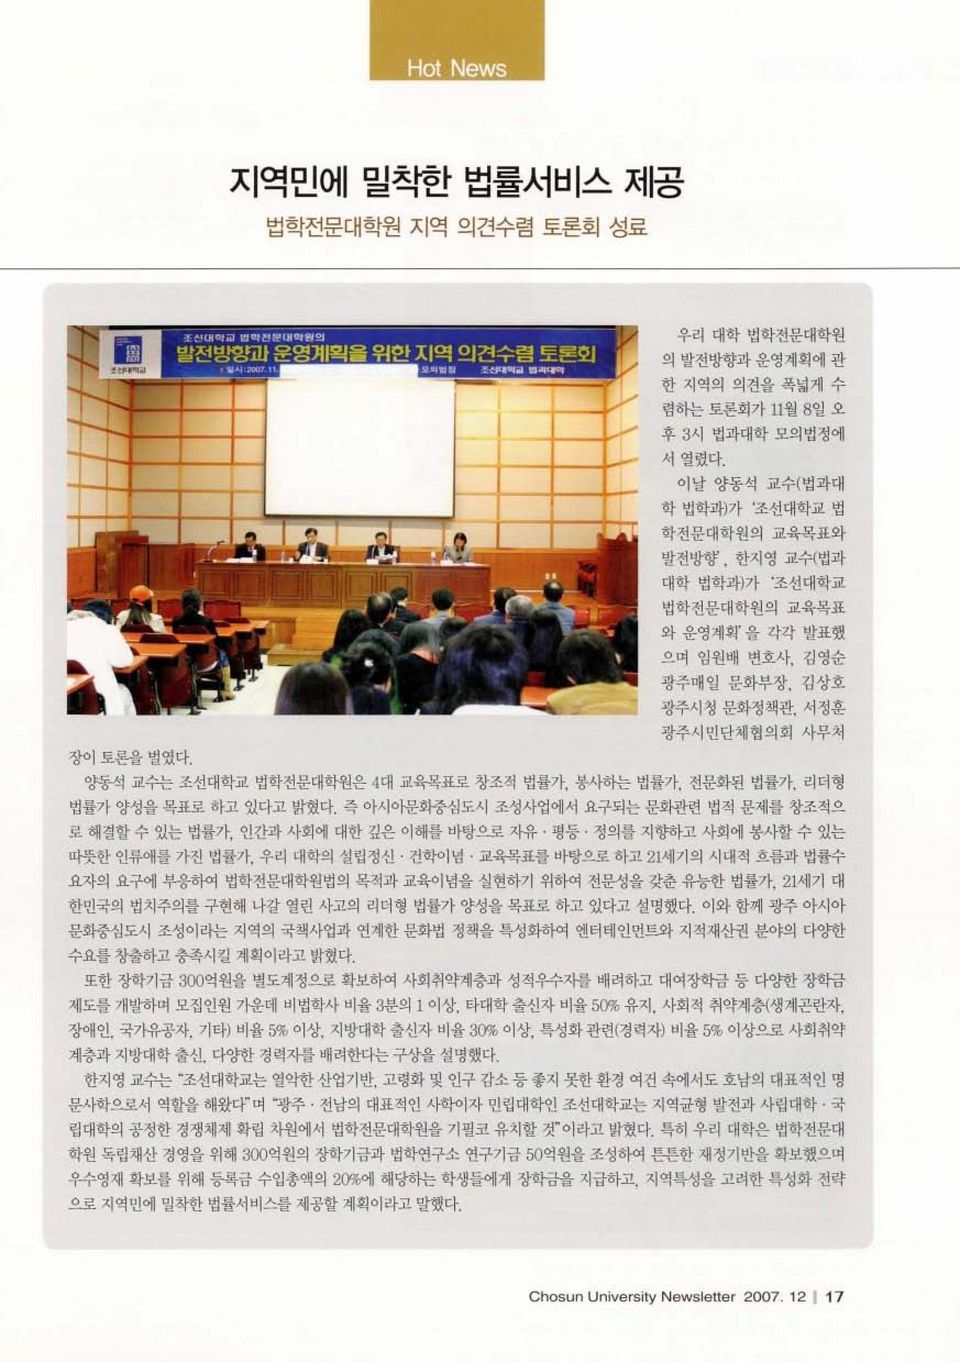 양동석 교수는 조선대학교 법학전문대학원은 4대 교육목표로 창조적 법률가, 봉사하는 법률가, 전문화된 법률가, 리더형 법률가 양성을 목표로 하고 있다고 밝혔다.